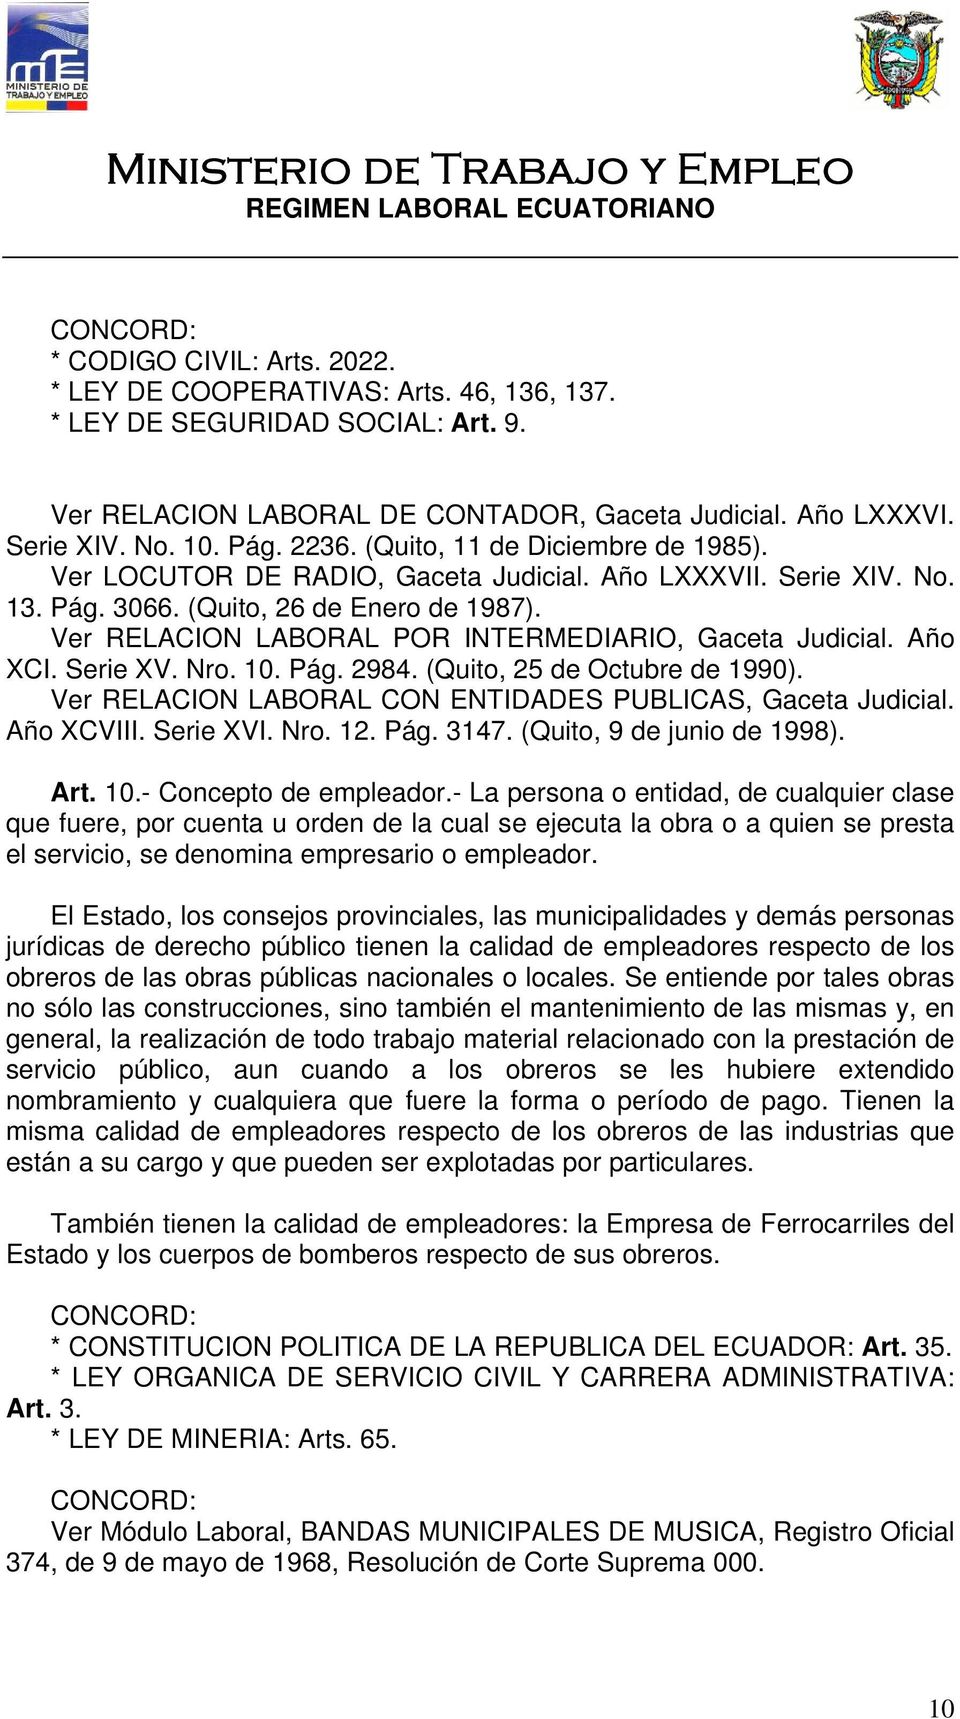 Ver RELACION LABORAL POR INTERMEDIARIO, Gaceta Judicial. Año XCI. Serie XV. Nro. 10. Pág. 2984. (Quito, 25 de Octubre de 1990). Ver RELACION LABORAL CON ENTIDADES PUBLICAS, Gaceta Judicial.